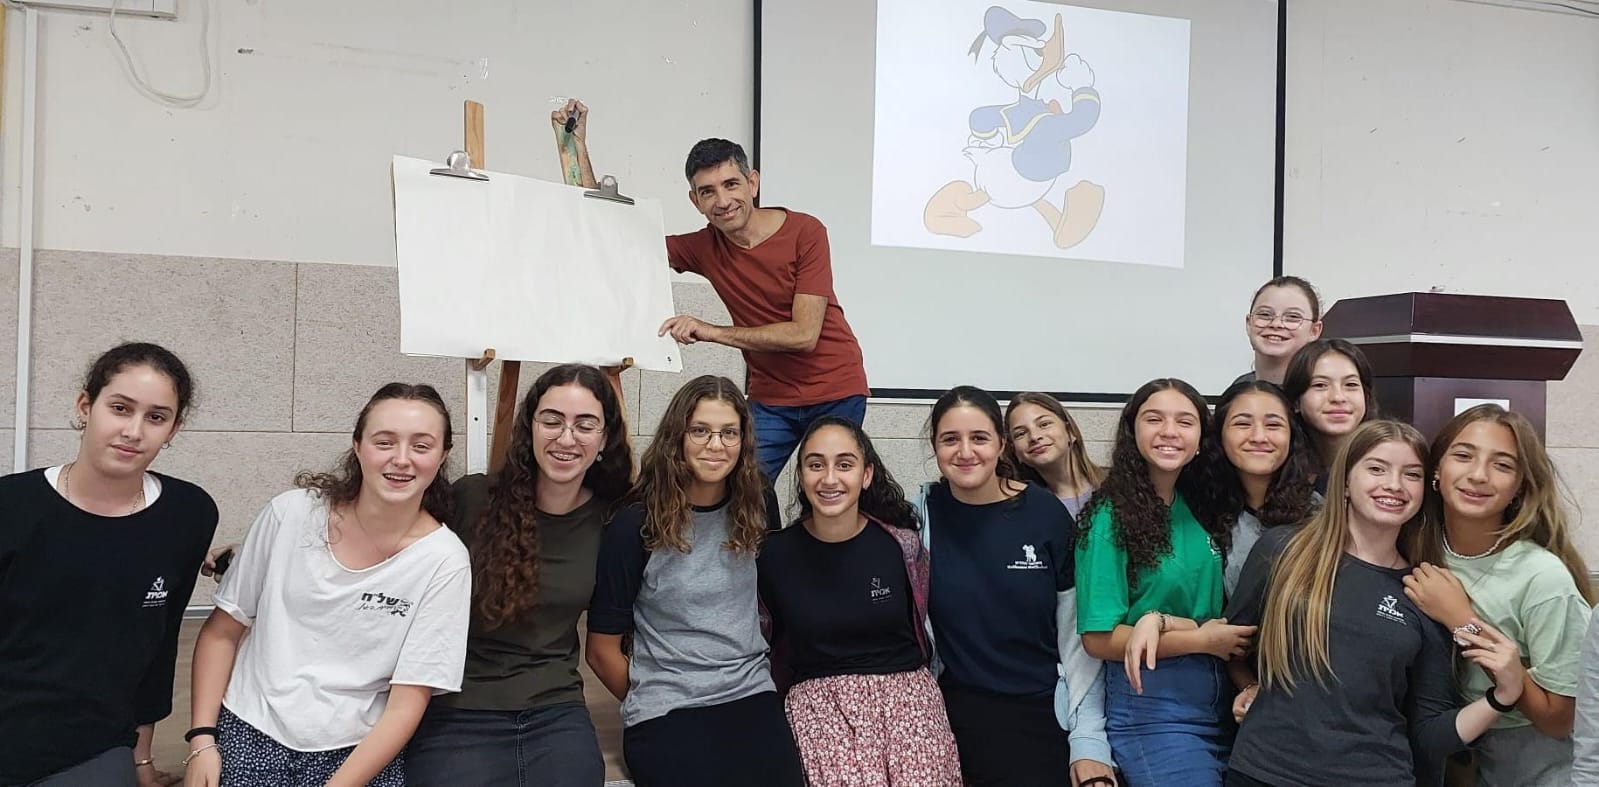 שי צ'רקה לתלמידות אולפנת אמית חיפה: "יש הרבה שפות מלבד שפת המילים"